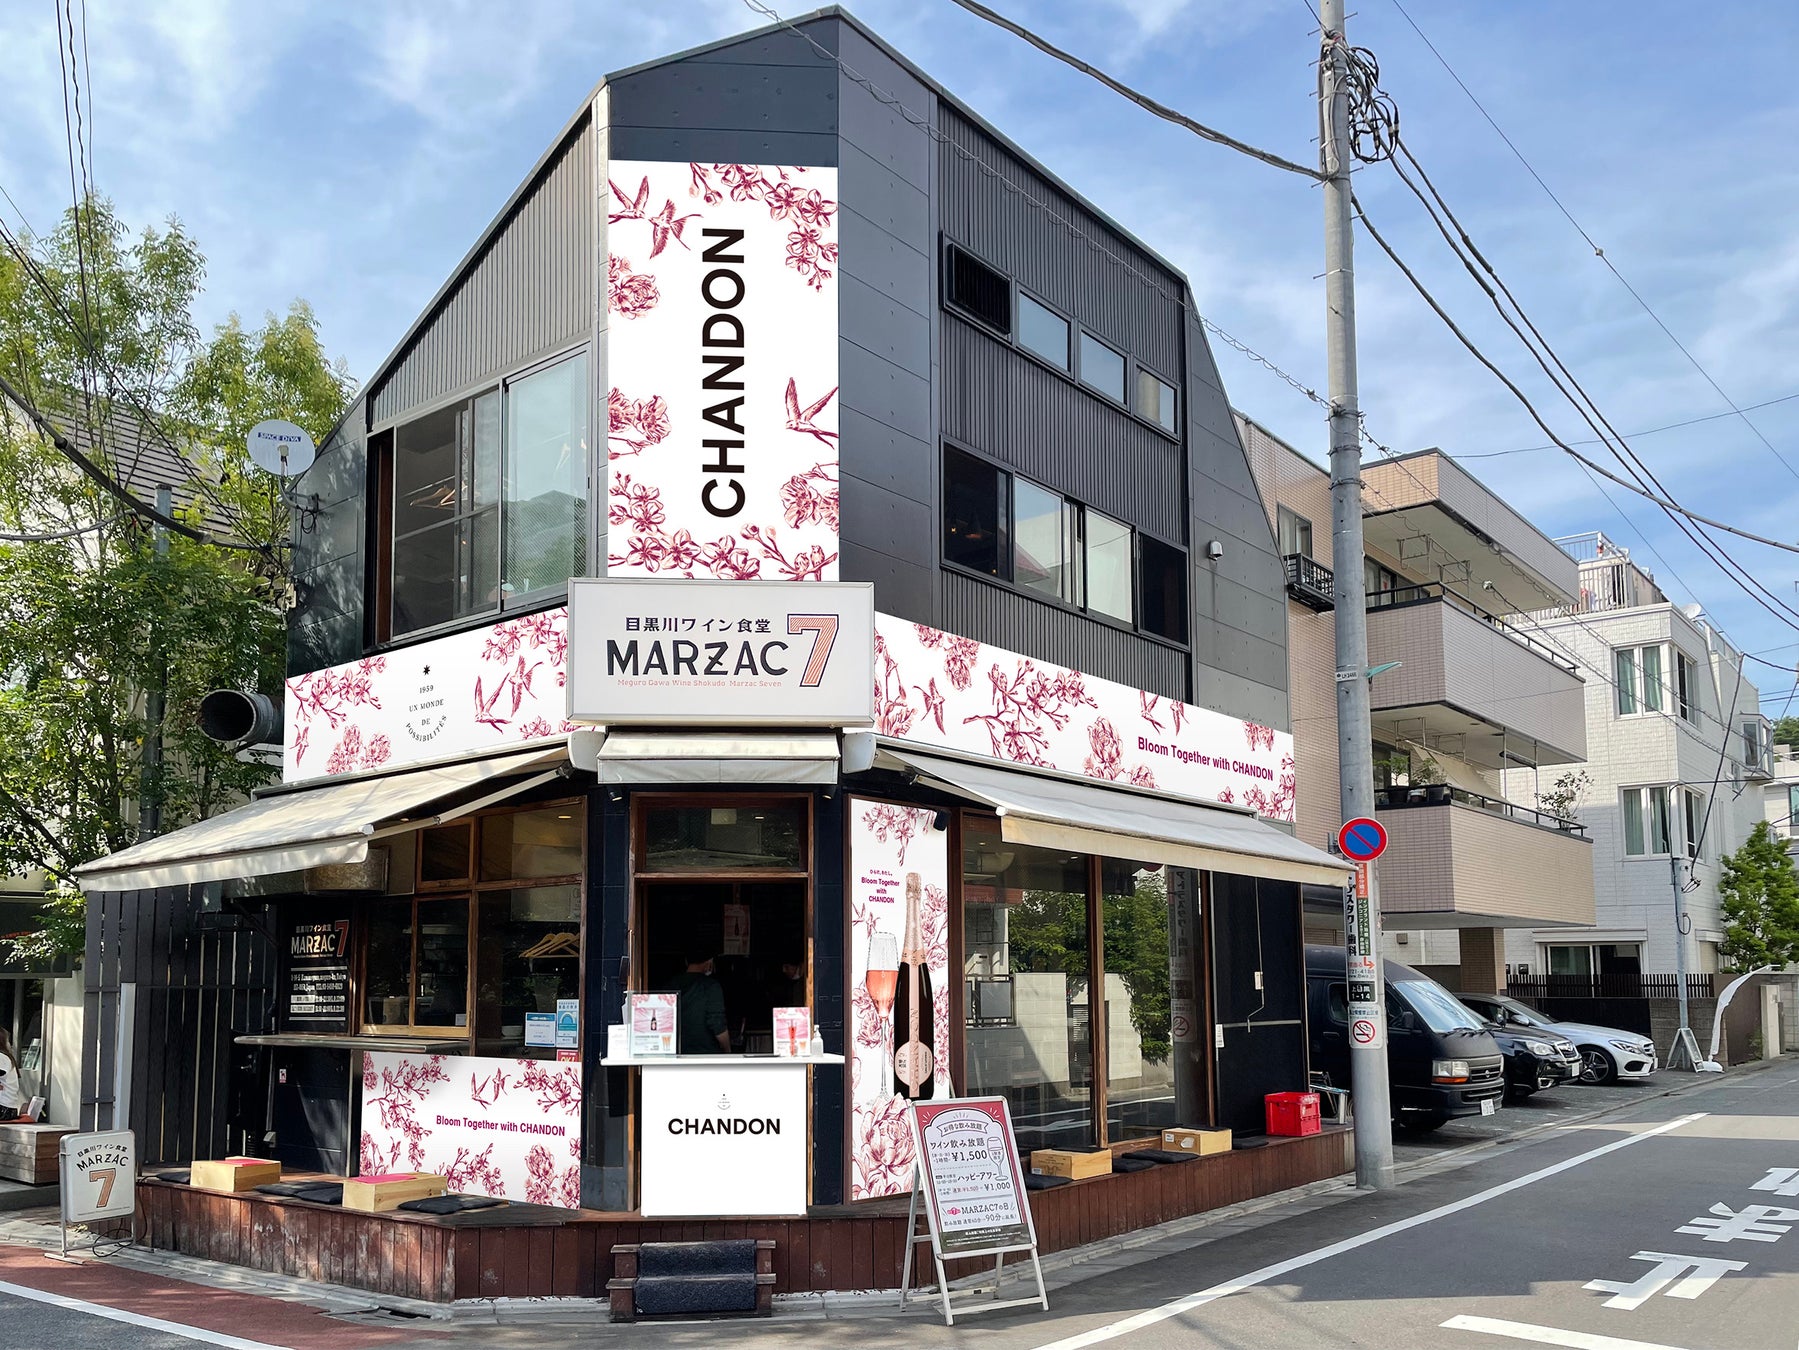 東京の桜スポット・目黒川のお花見期間限定でオープン！「シャンドン」とのコラボレーション・MARZAC 7 で「スプリングポップアップバー」を実施